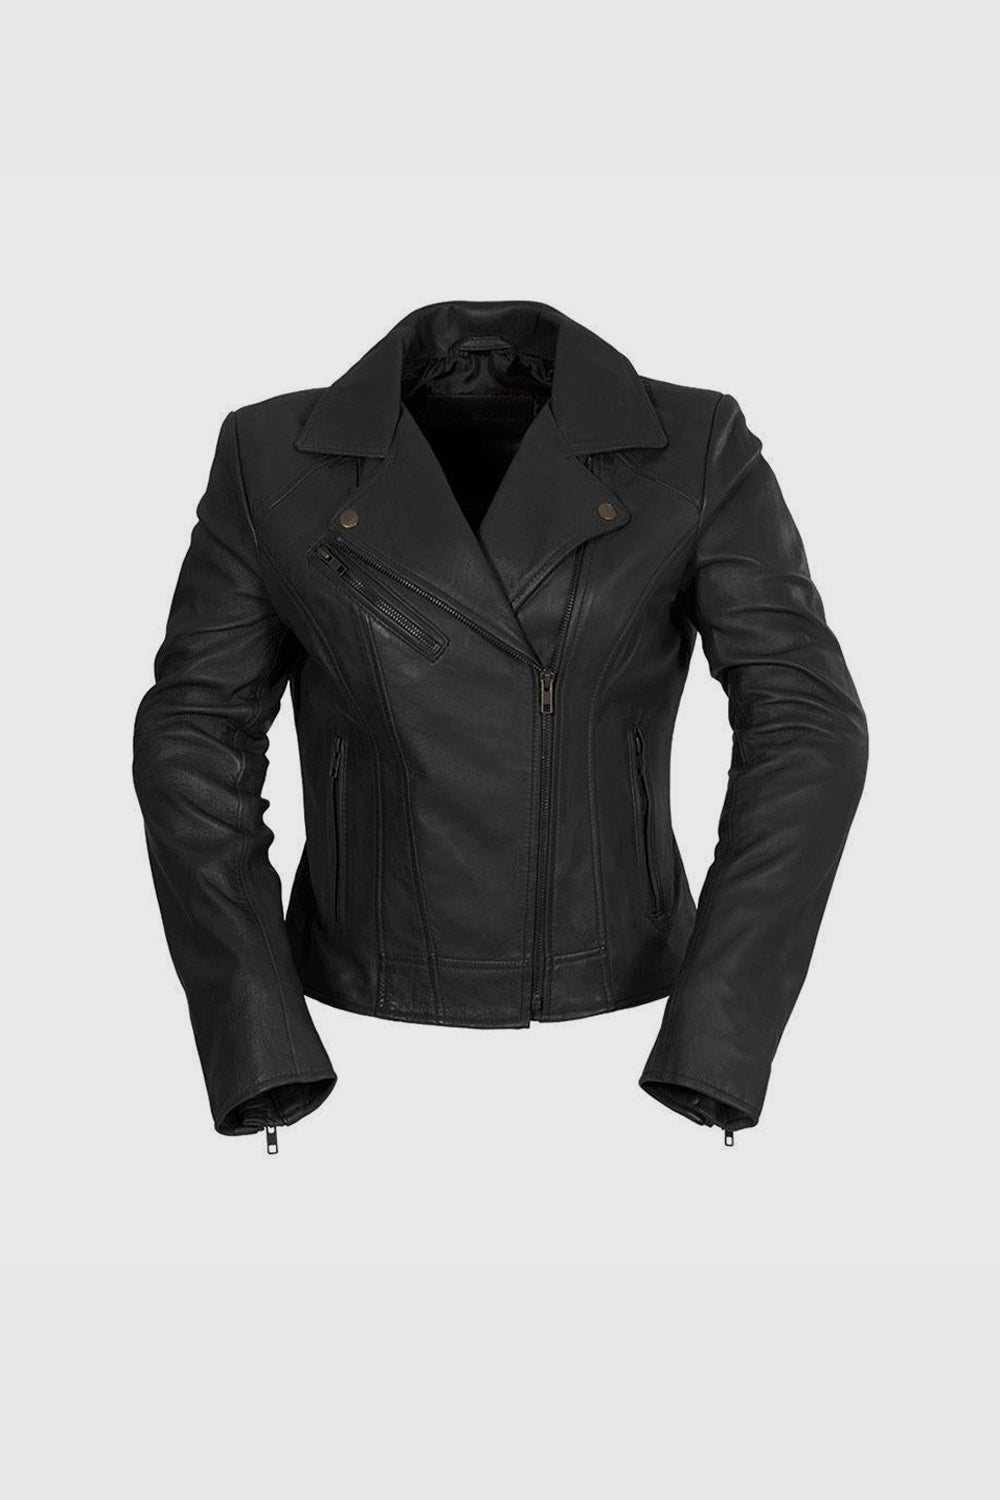 Betsy Womens Fashion Leather Jacket black Women's Leather Jacket Whet Blu NYC XS Black 